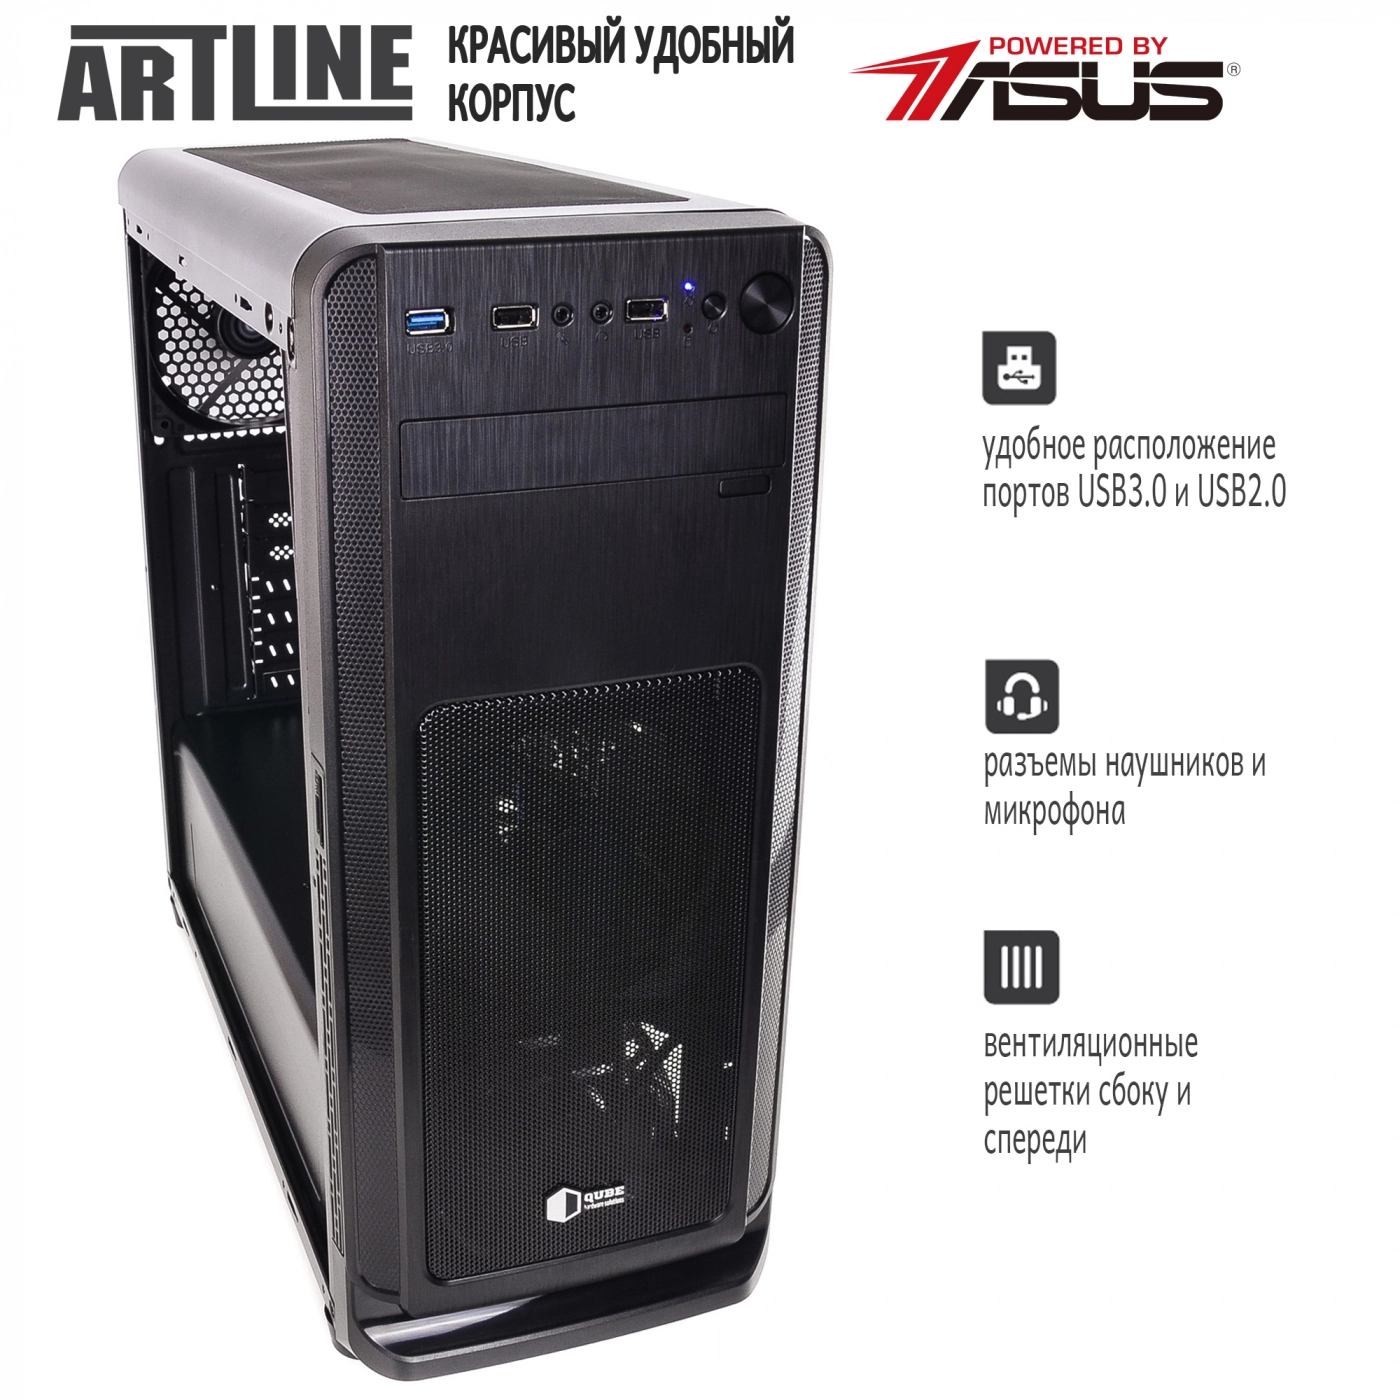 Купить Сервер ARTLINE Business T17v09 - фото 8